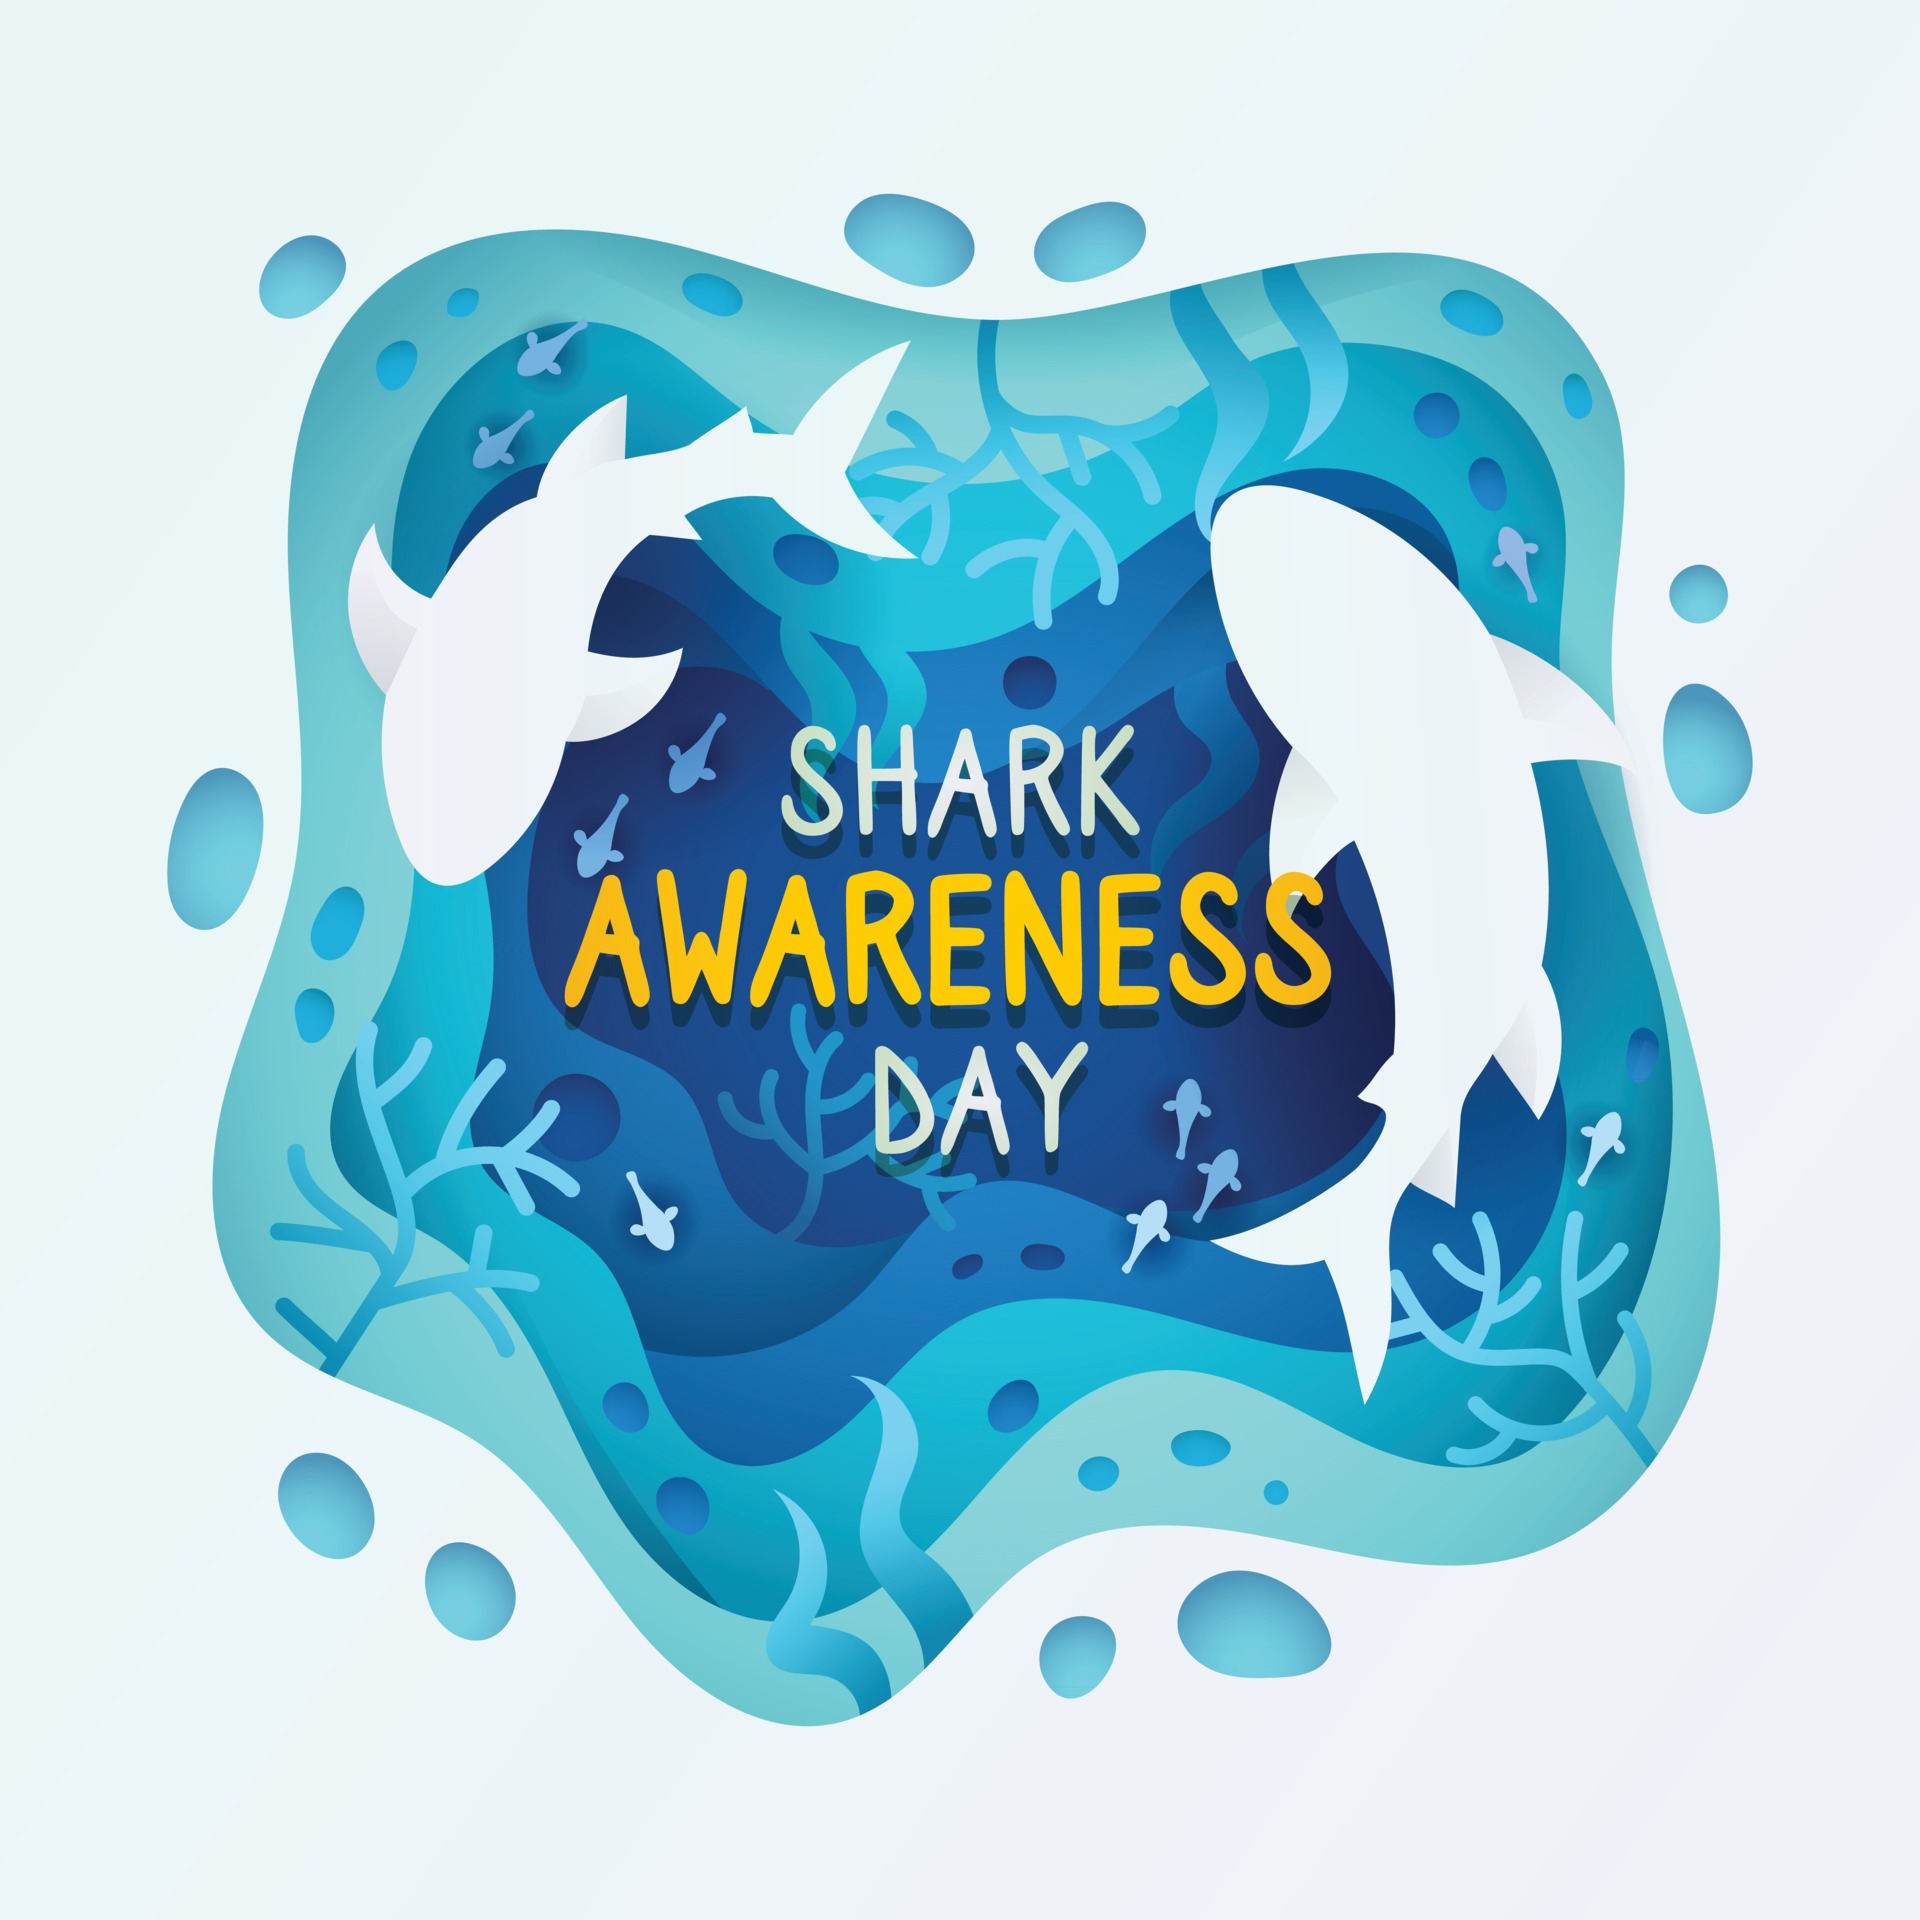 Shark Awareness Day Concept 2489522 Vector Art at Vecteezy